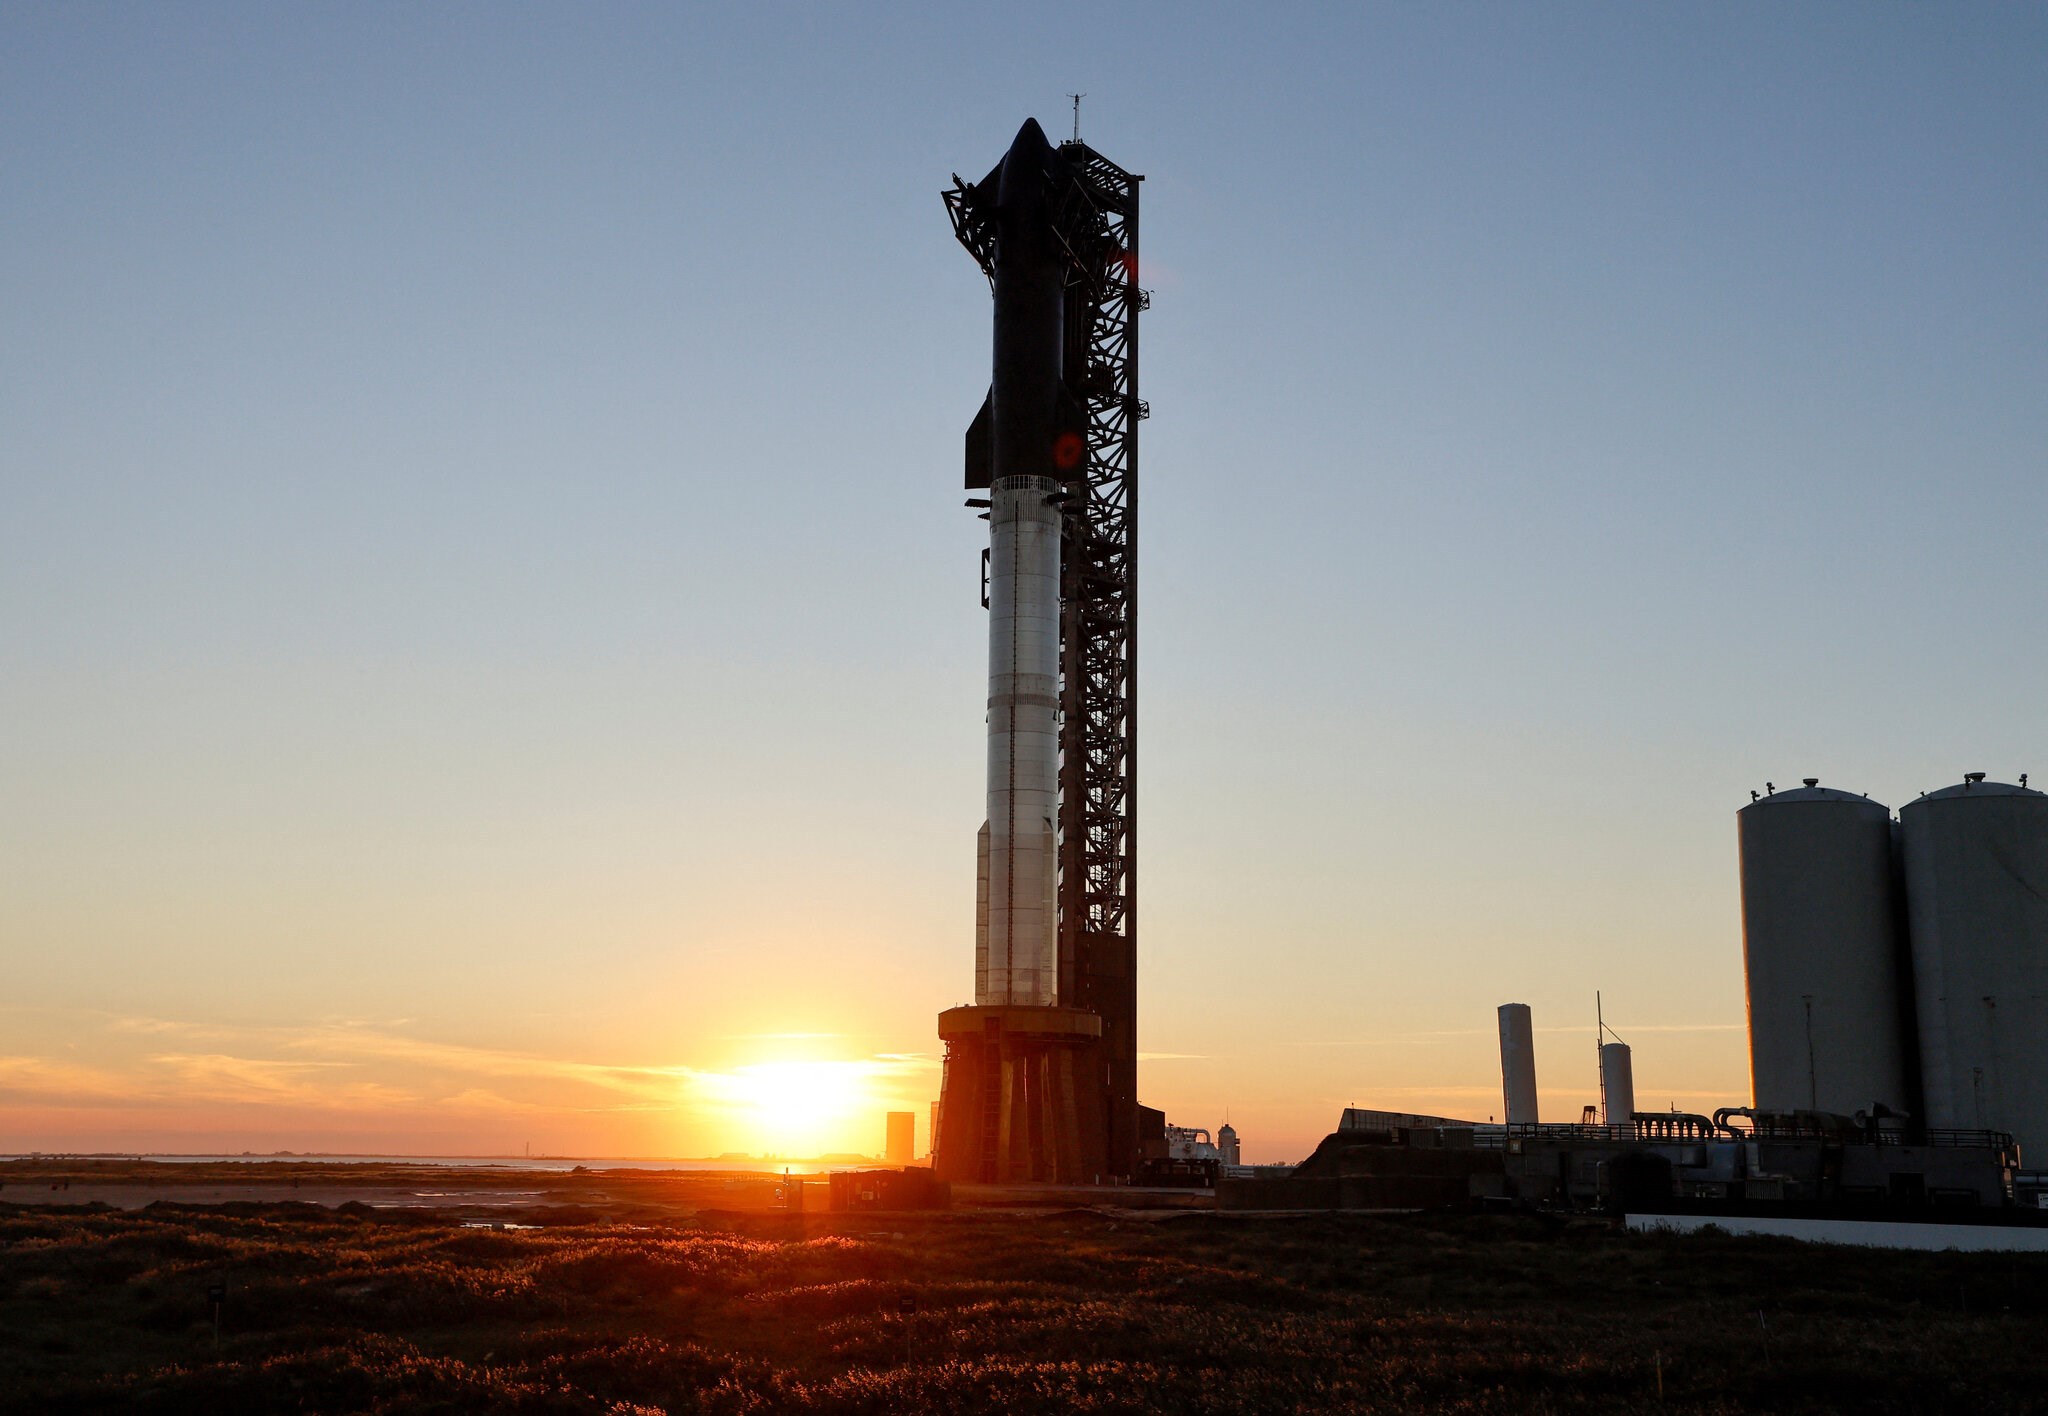 Tarihin en güçlü roketi SpaceX Starship fırlatıldı!